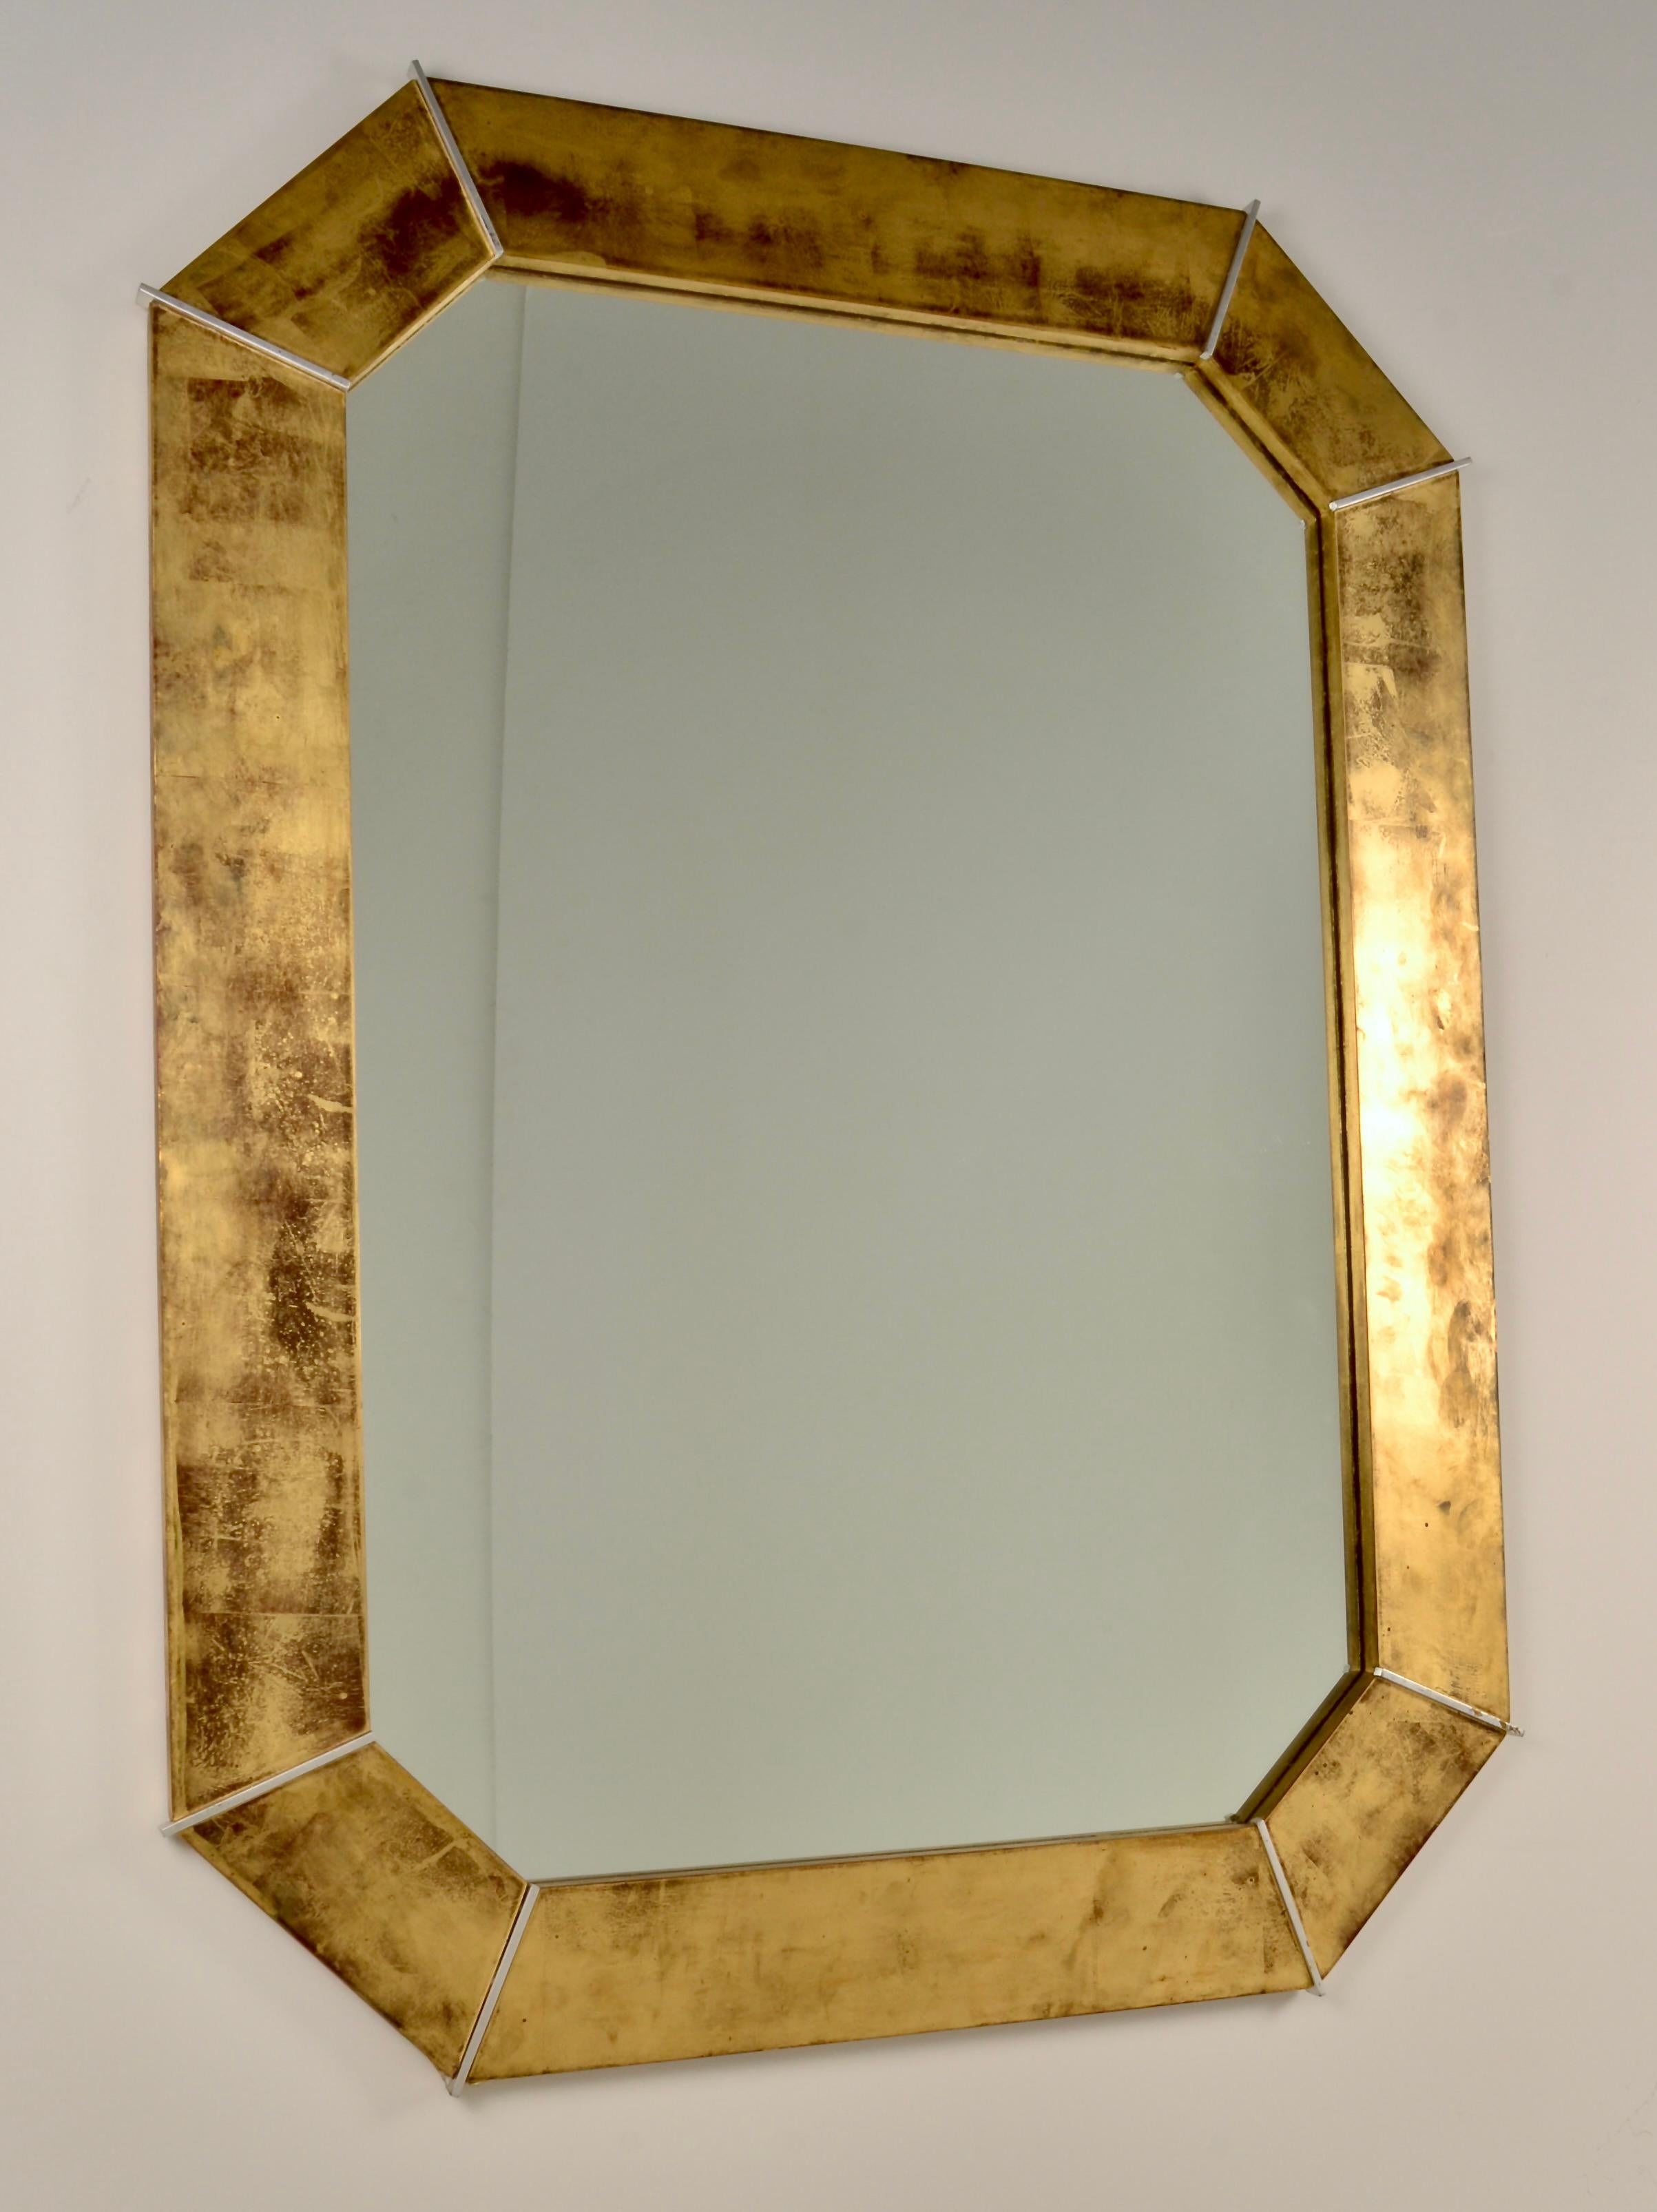 Dieser großformatige achteckige Spiegel des Designers Karl Springer zeichnet sich durch ein dramatisches, speziell angefertigtes Blattgold-Finish auf Holz aus, das mit silbernen, vergoldeten Unterteilungen versehen ist. Gefertigt in der bekannt